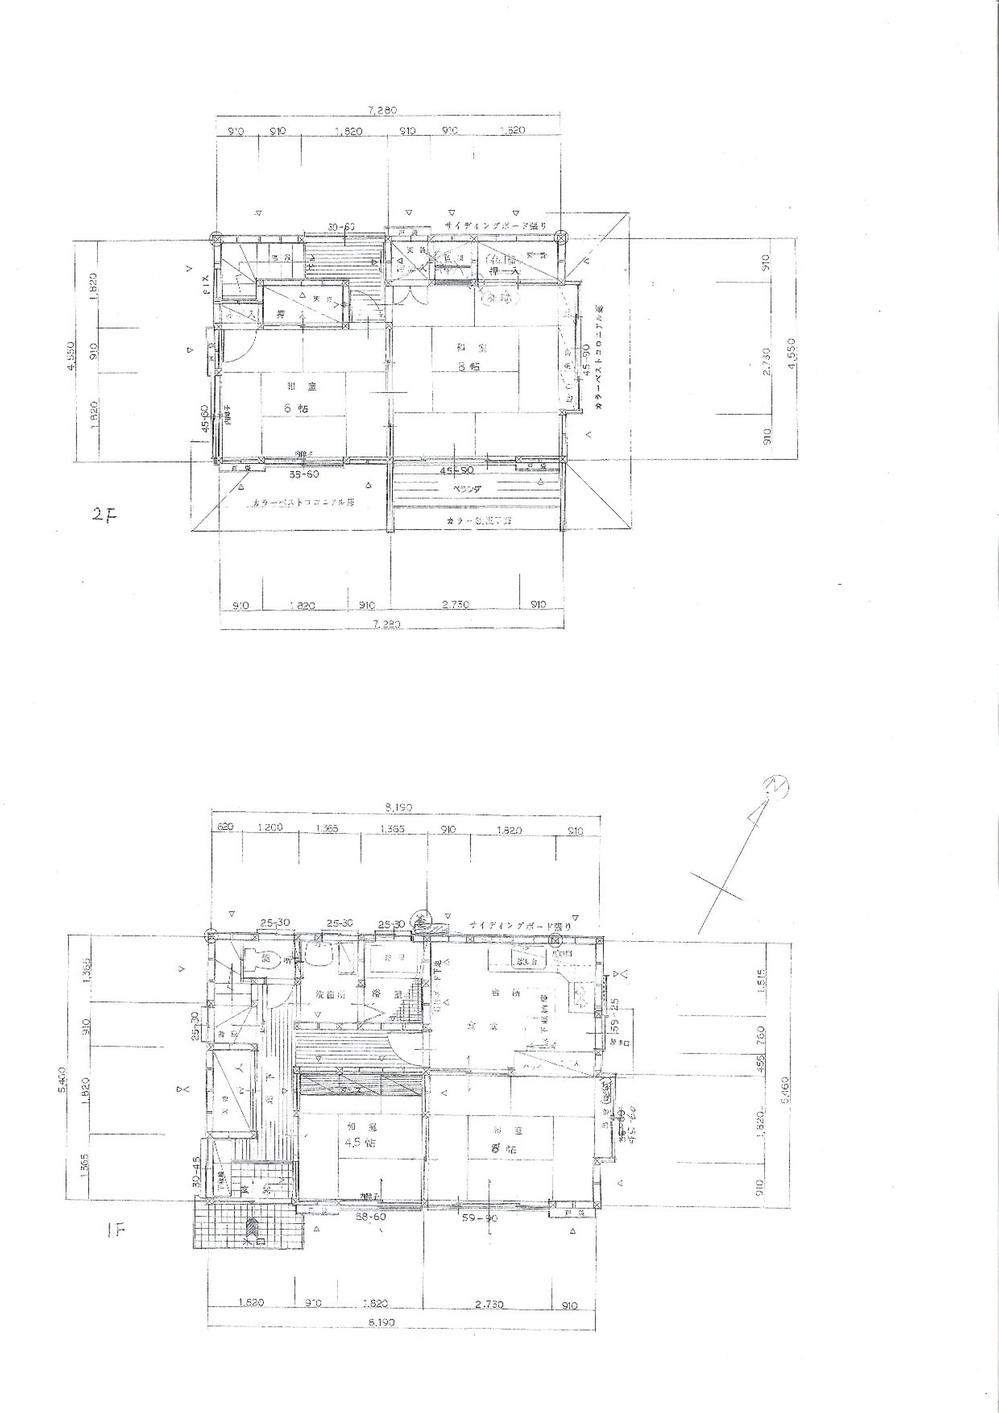 Floor plan. 7.9 million yen, 4DK, Land area 76.88 sq m , Building area 76.86 sq m